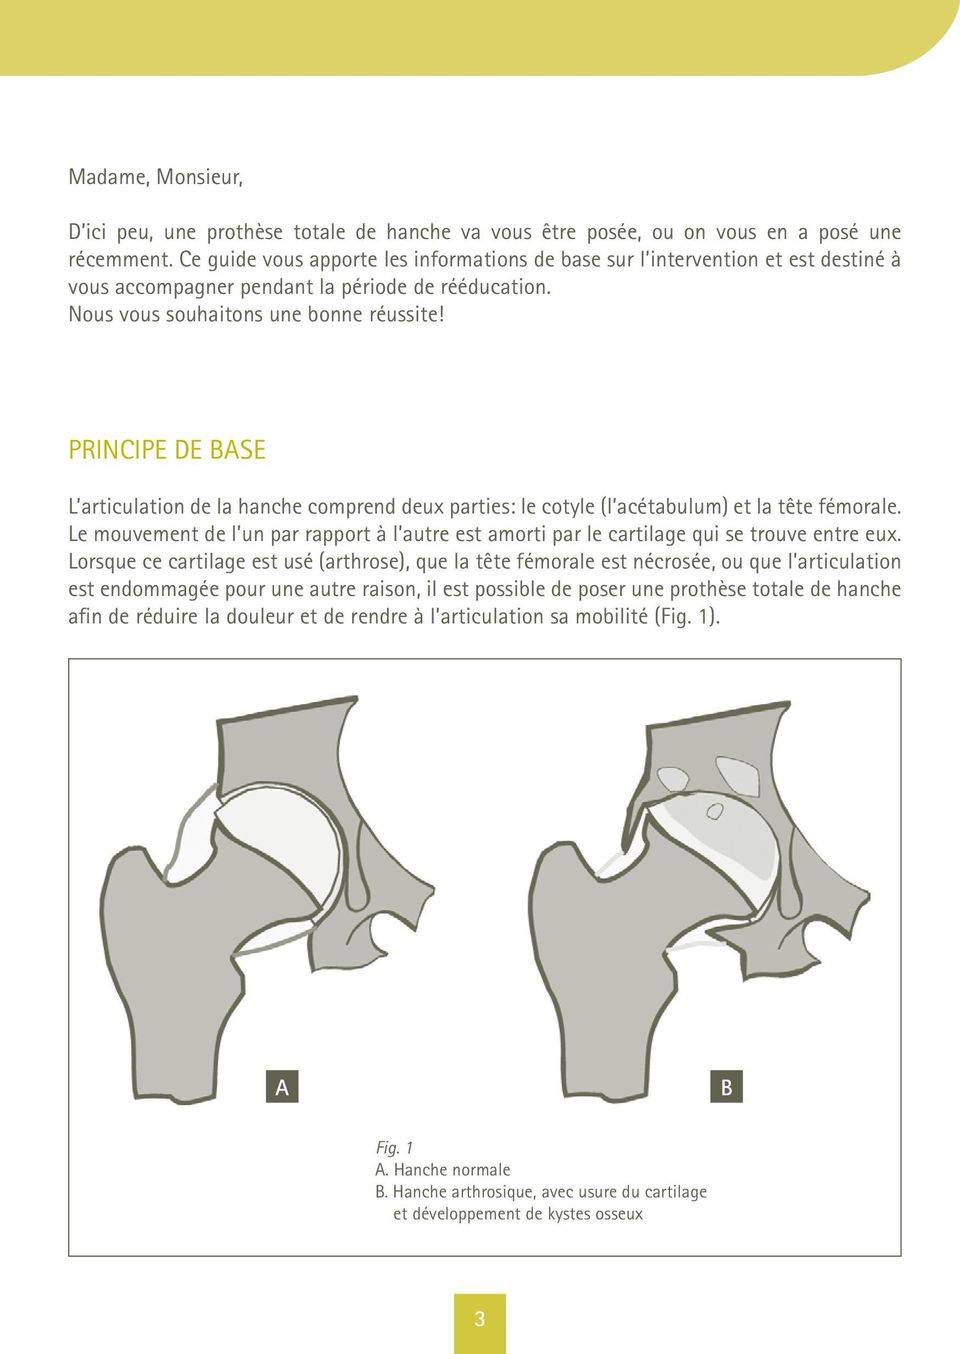 Principe de base L articulation de la hanche comprend deux parties: le cotyle (l acétabulum) et la tête fémorale.